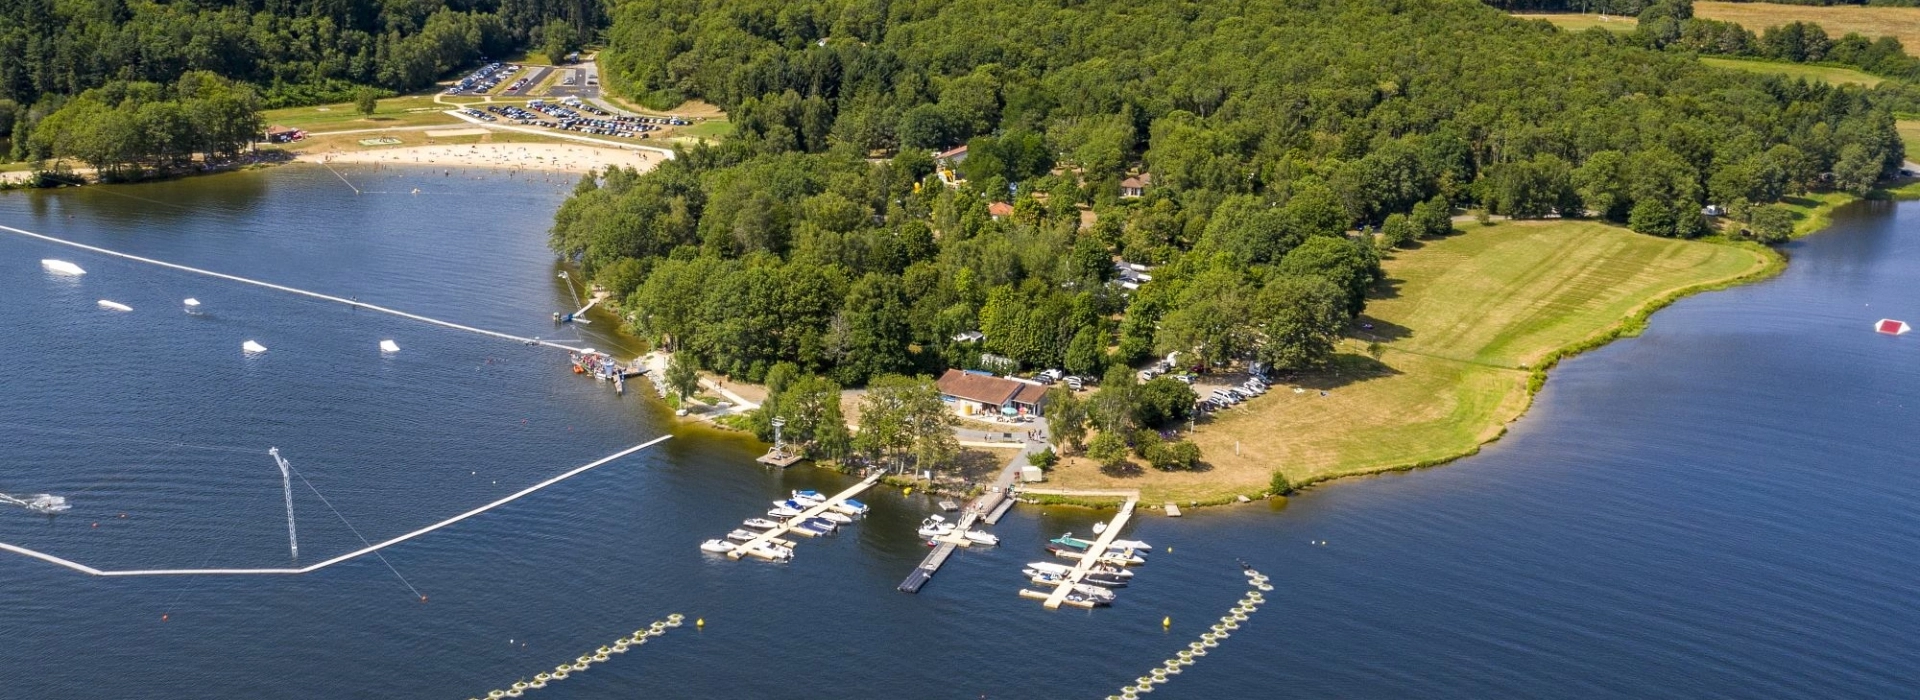 Vue aérienne du camping du Lac de Saint-Pardoux